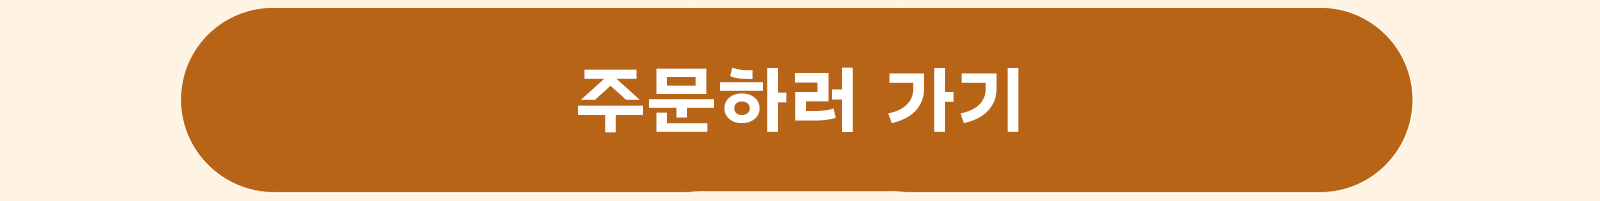 [MO] 제주마음샌드 예약_최종 (2)